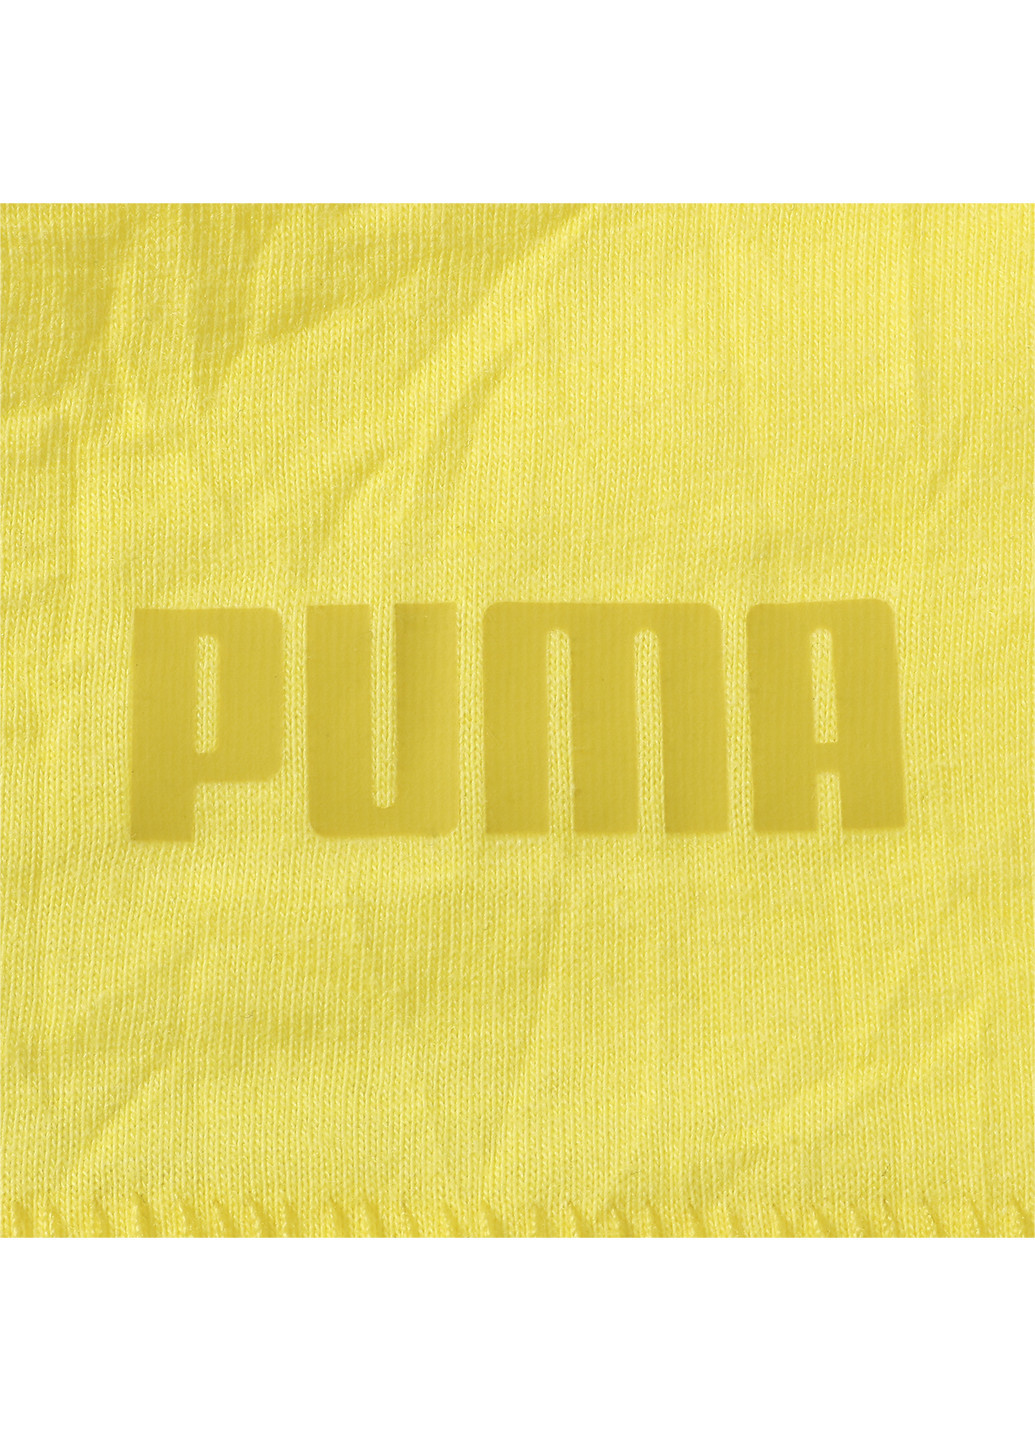 Желтая футболка alteration tee Puma